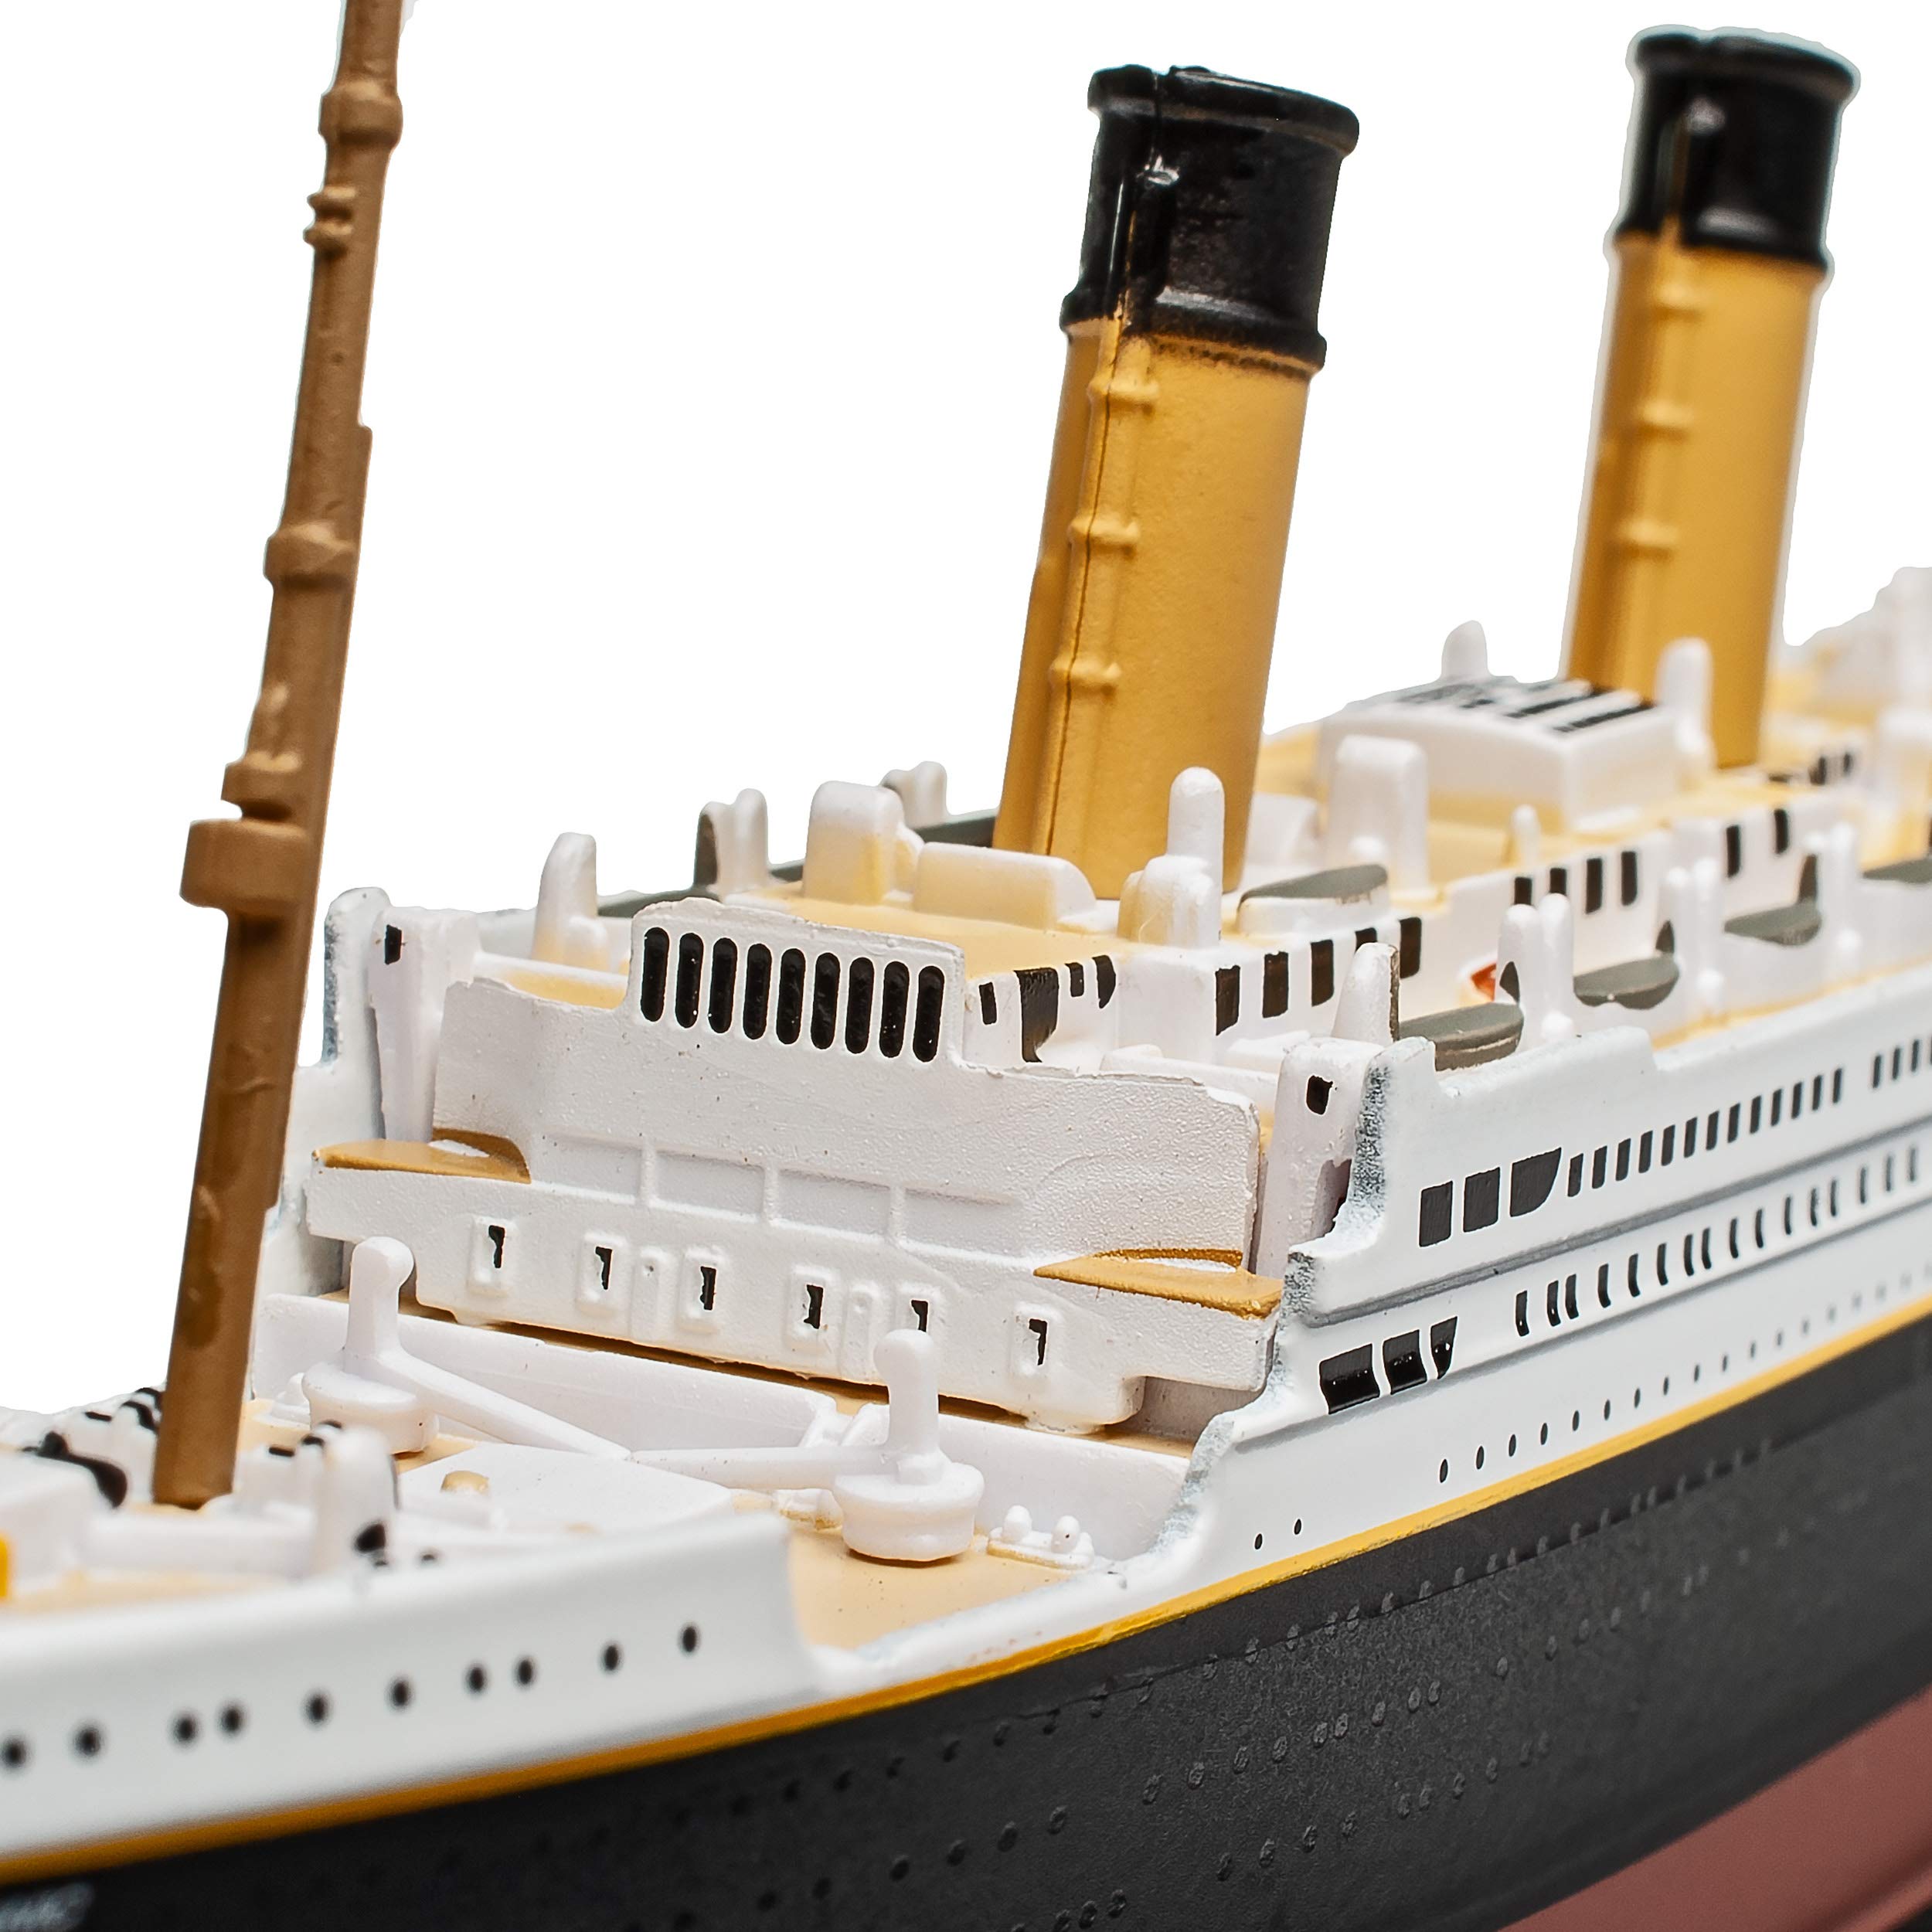 Mua Atlas RMS Titanic Luxury Damper Ship 1/1250 Special Offer Ship Model  trên Amazon Đức chính hãng 2023 | Giaonhan247